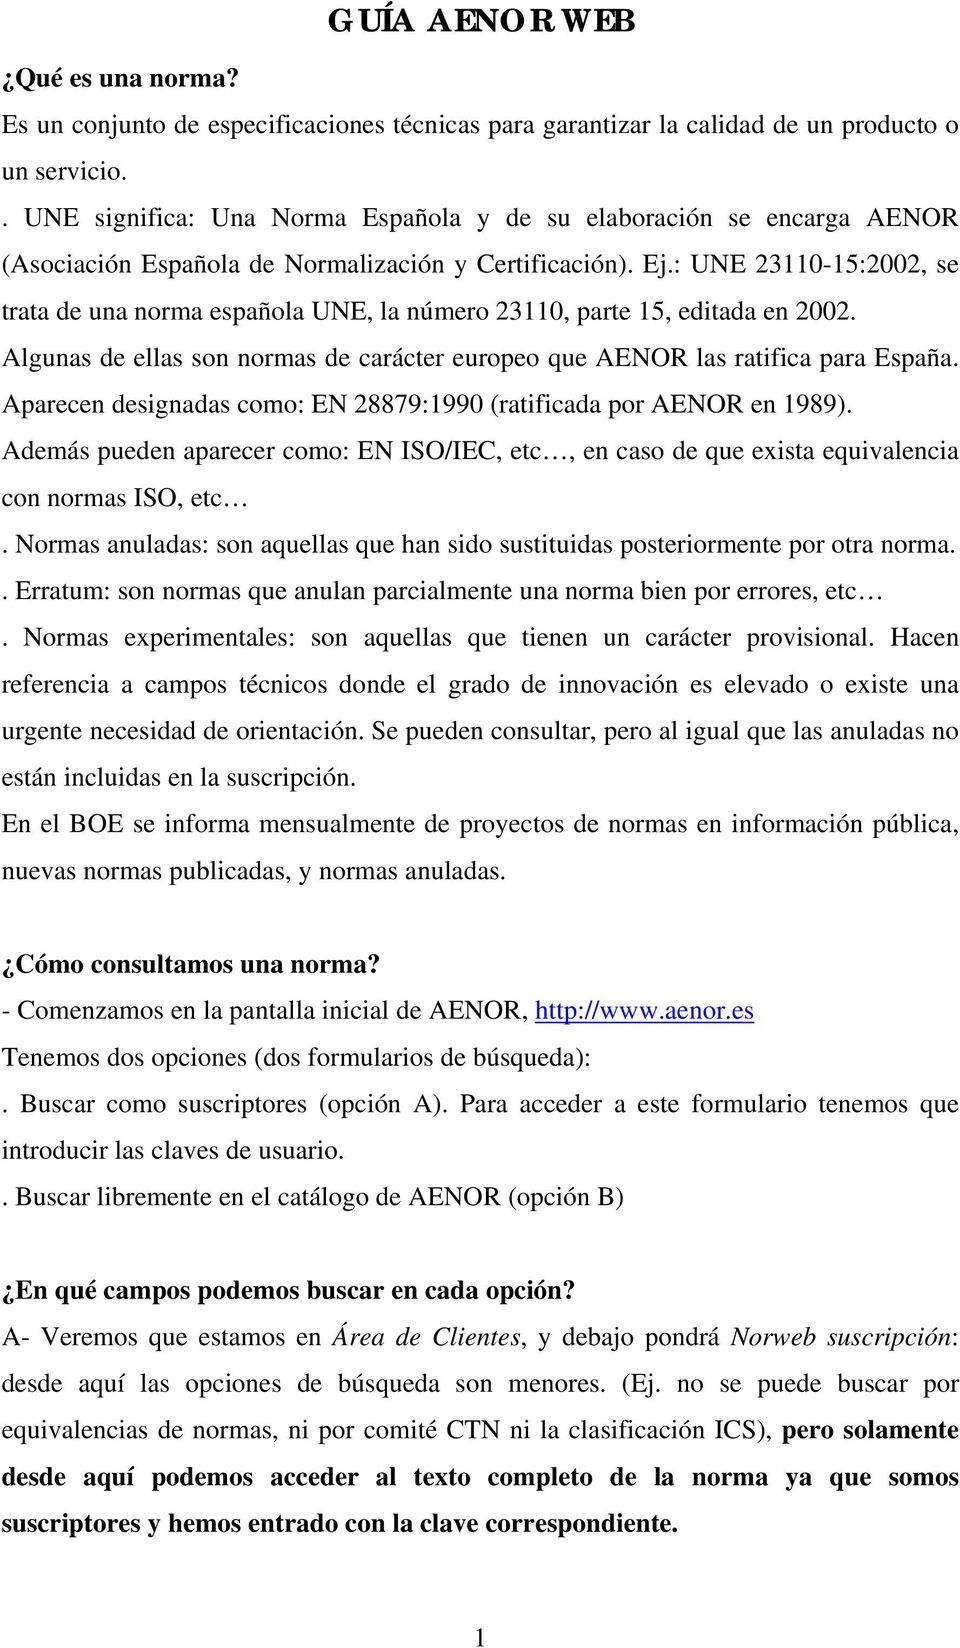 : UNE 23110-15:2002, se trata de una norma española UNE, la número 23110, parte 15, editada en 2002. Algunas de ellas son normas de carácter europeo que AENOR las ratifica para España.